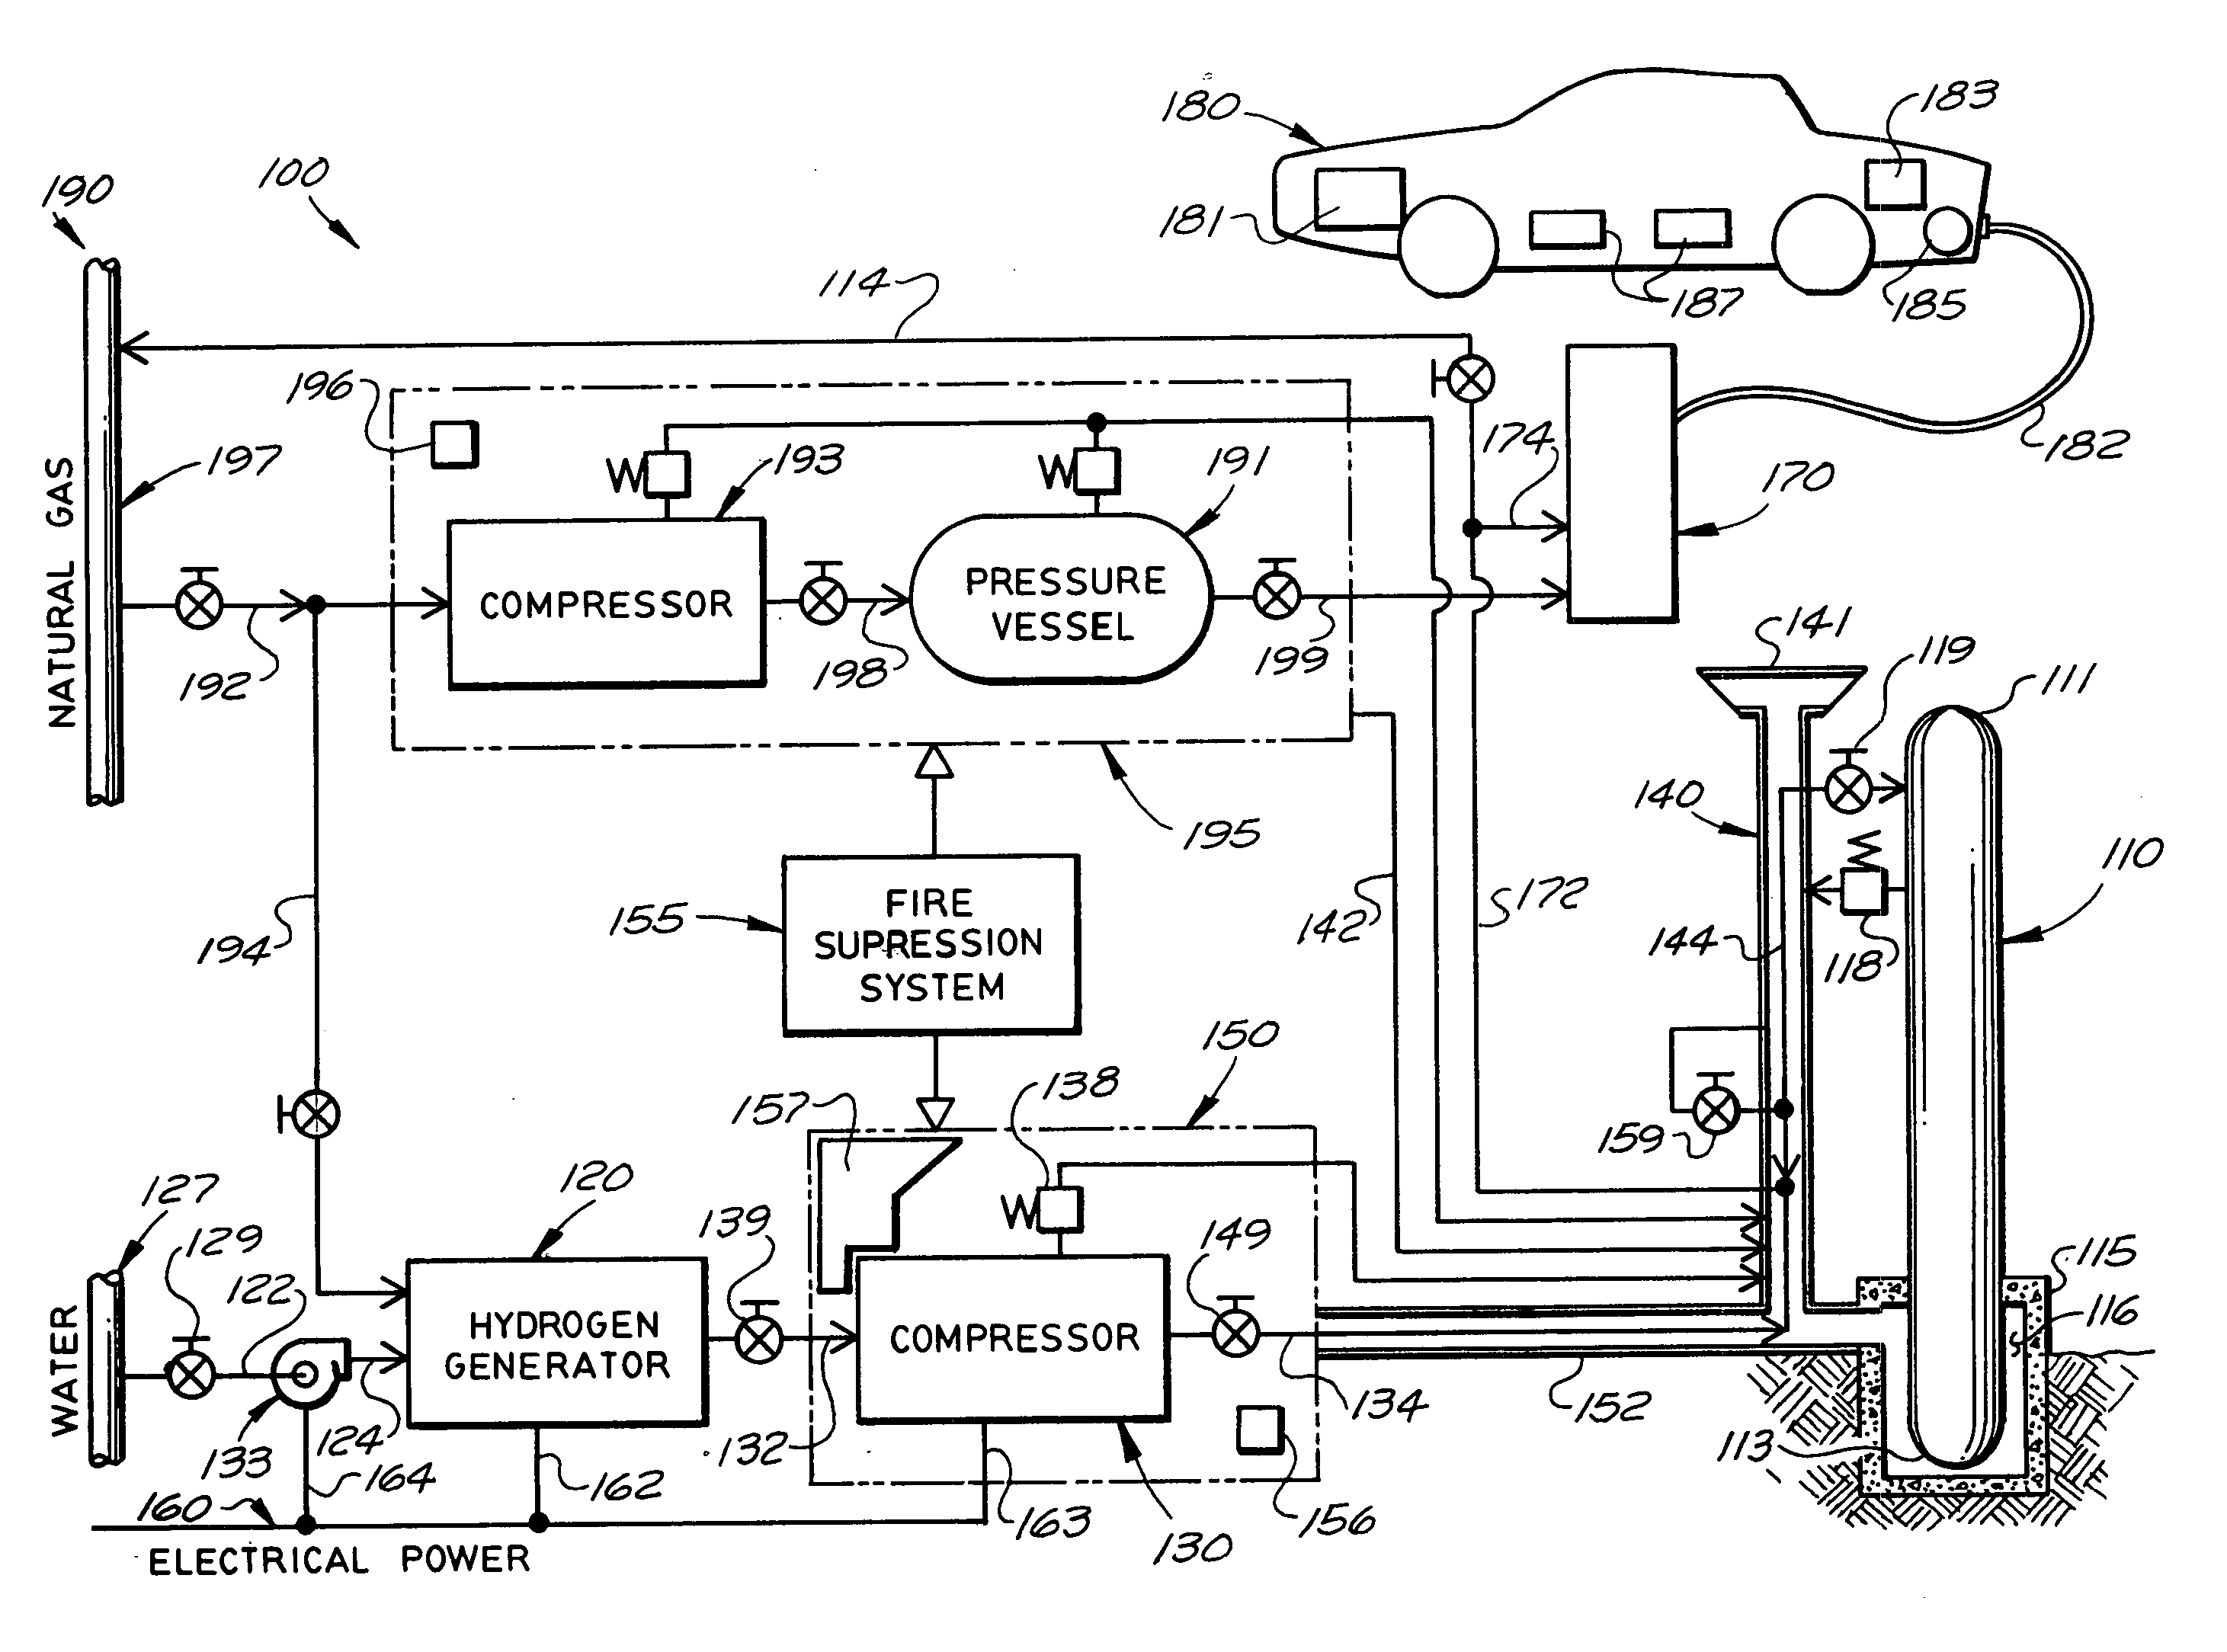 Hydrogen handling or dispensing system